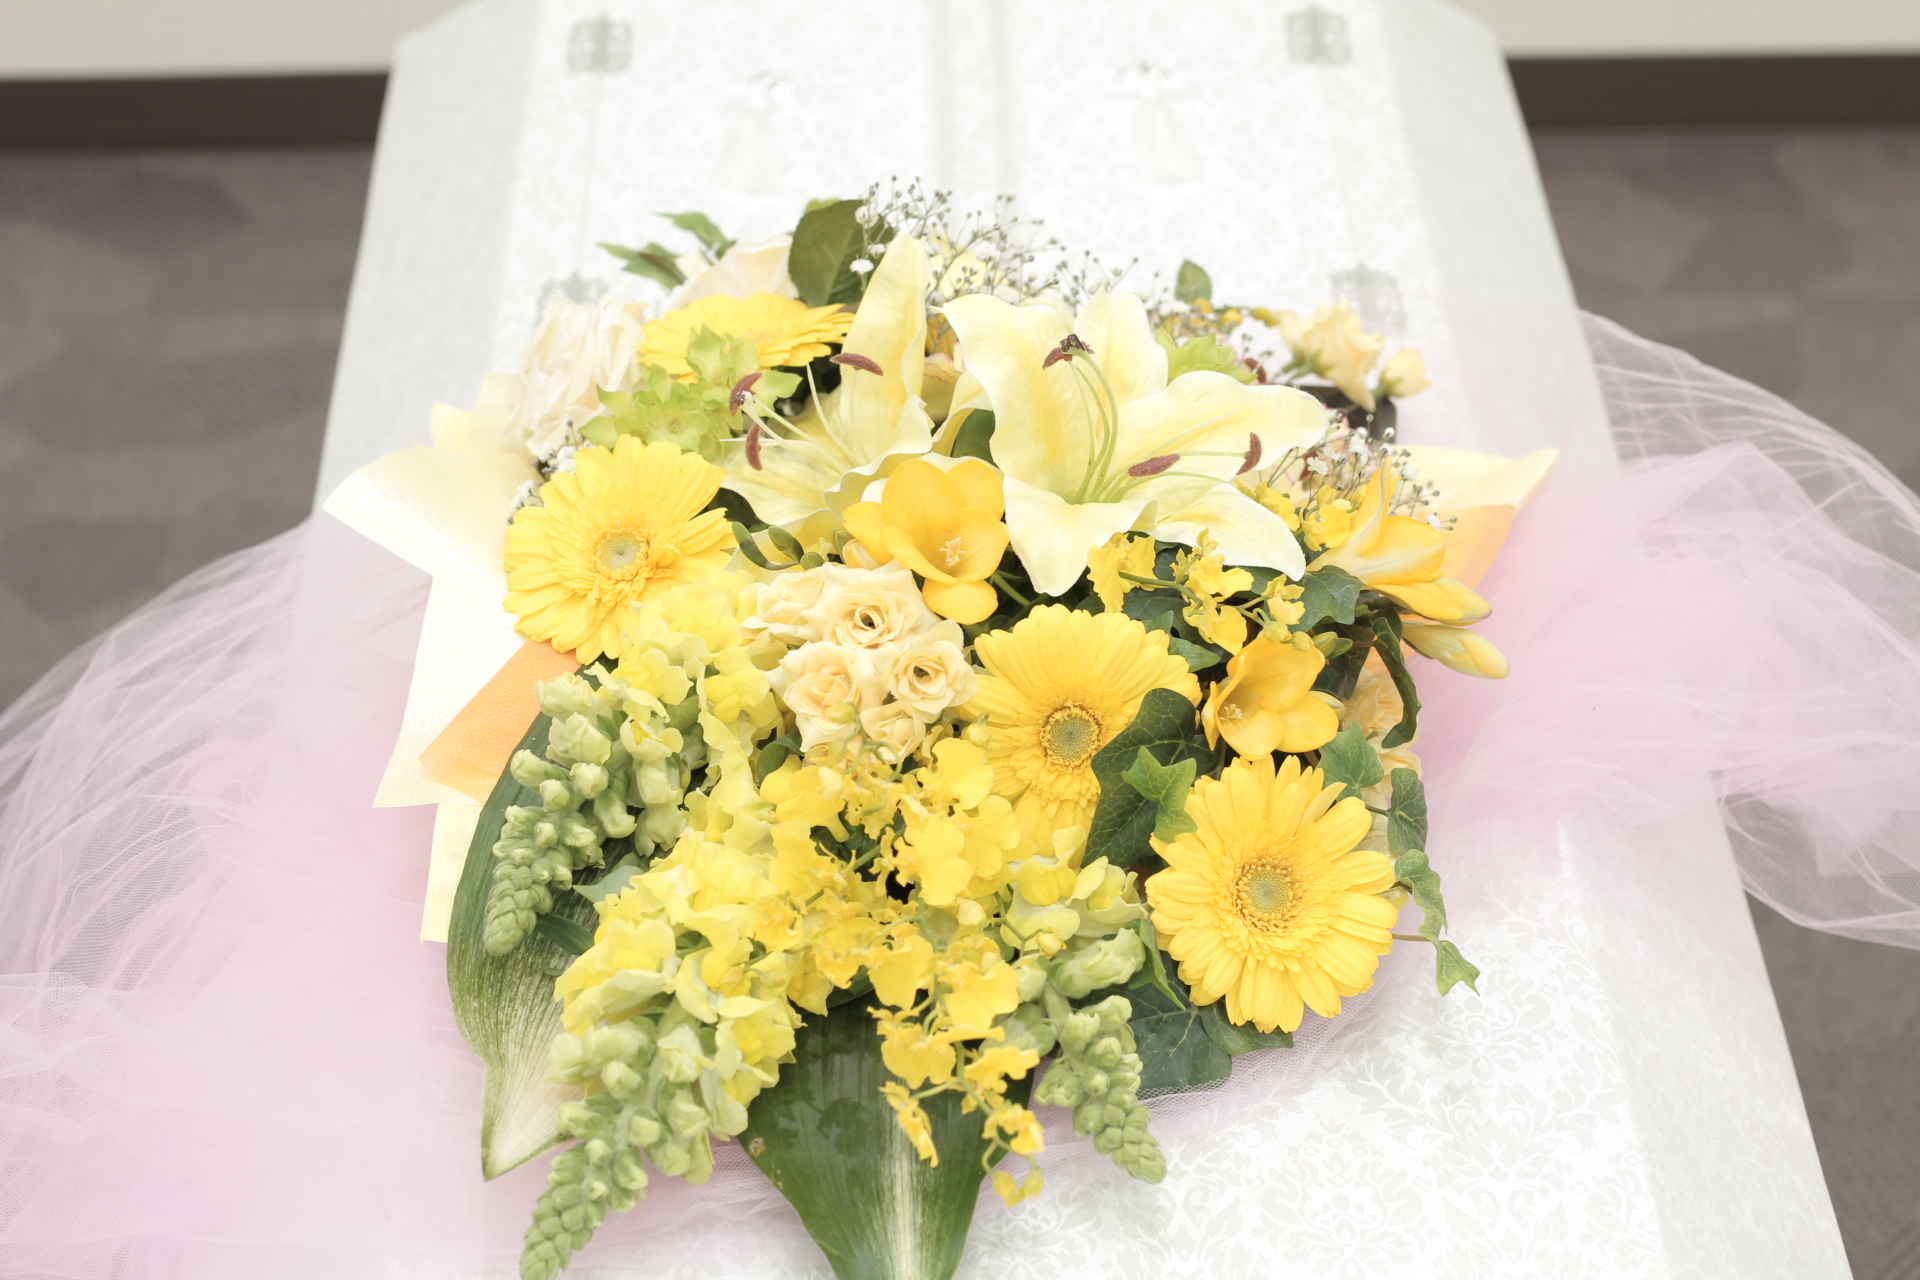 おてごろ葬 黄色のお別れの花束 おてごろ葬 福岡 大阪の直葬や火葬式などの格安葬儀